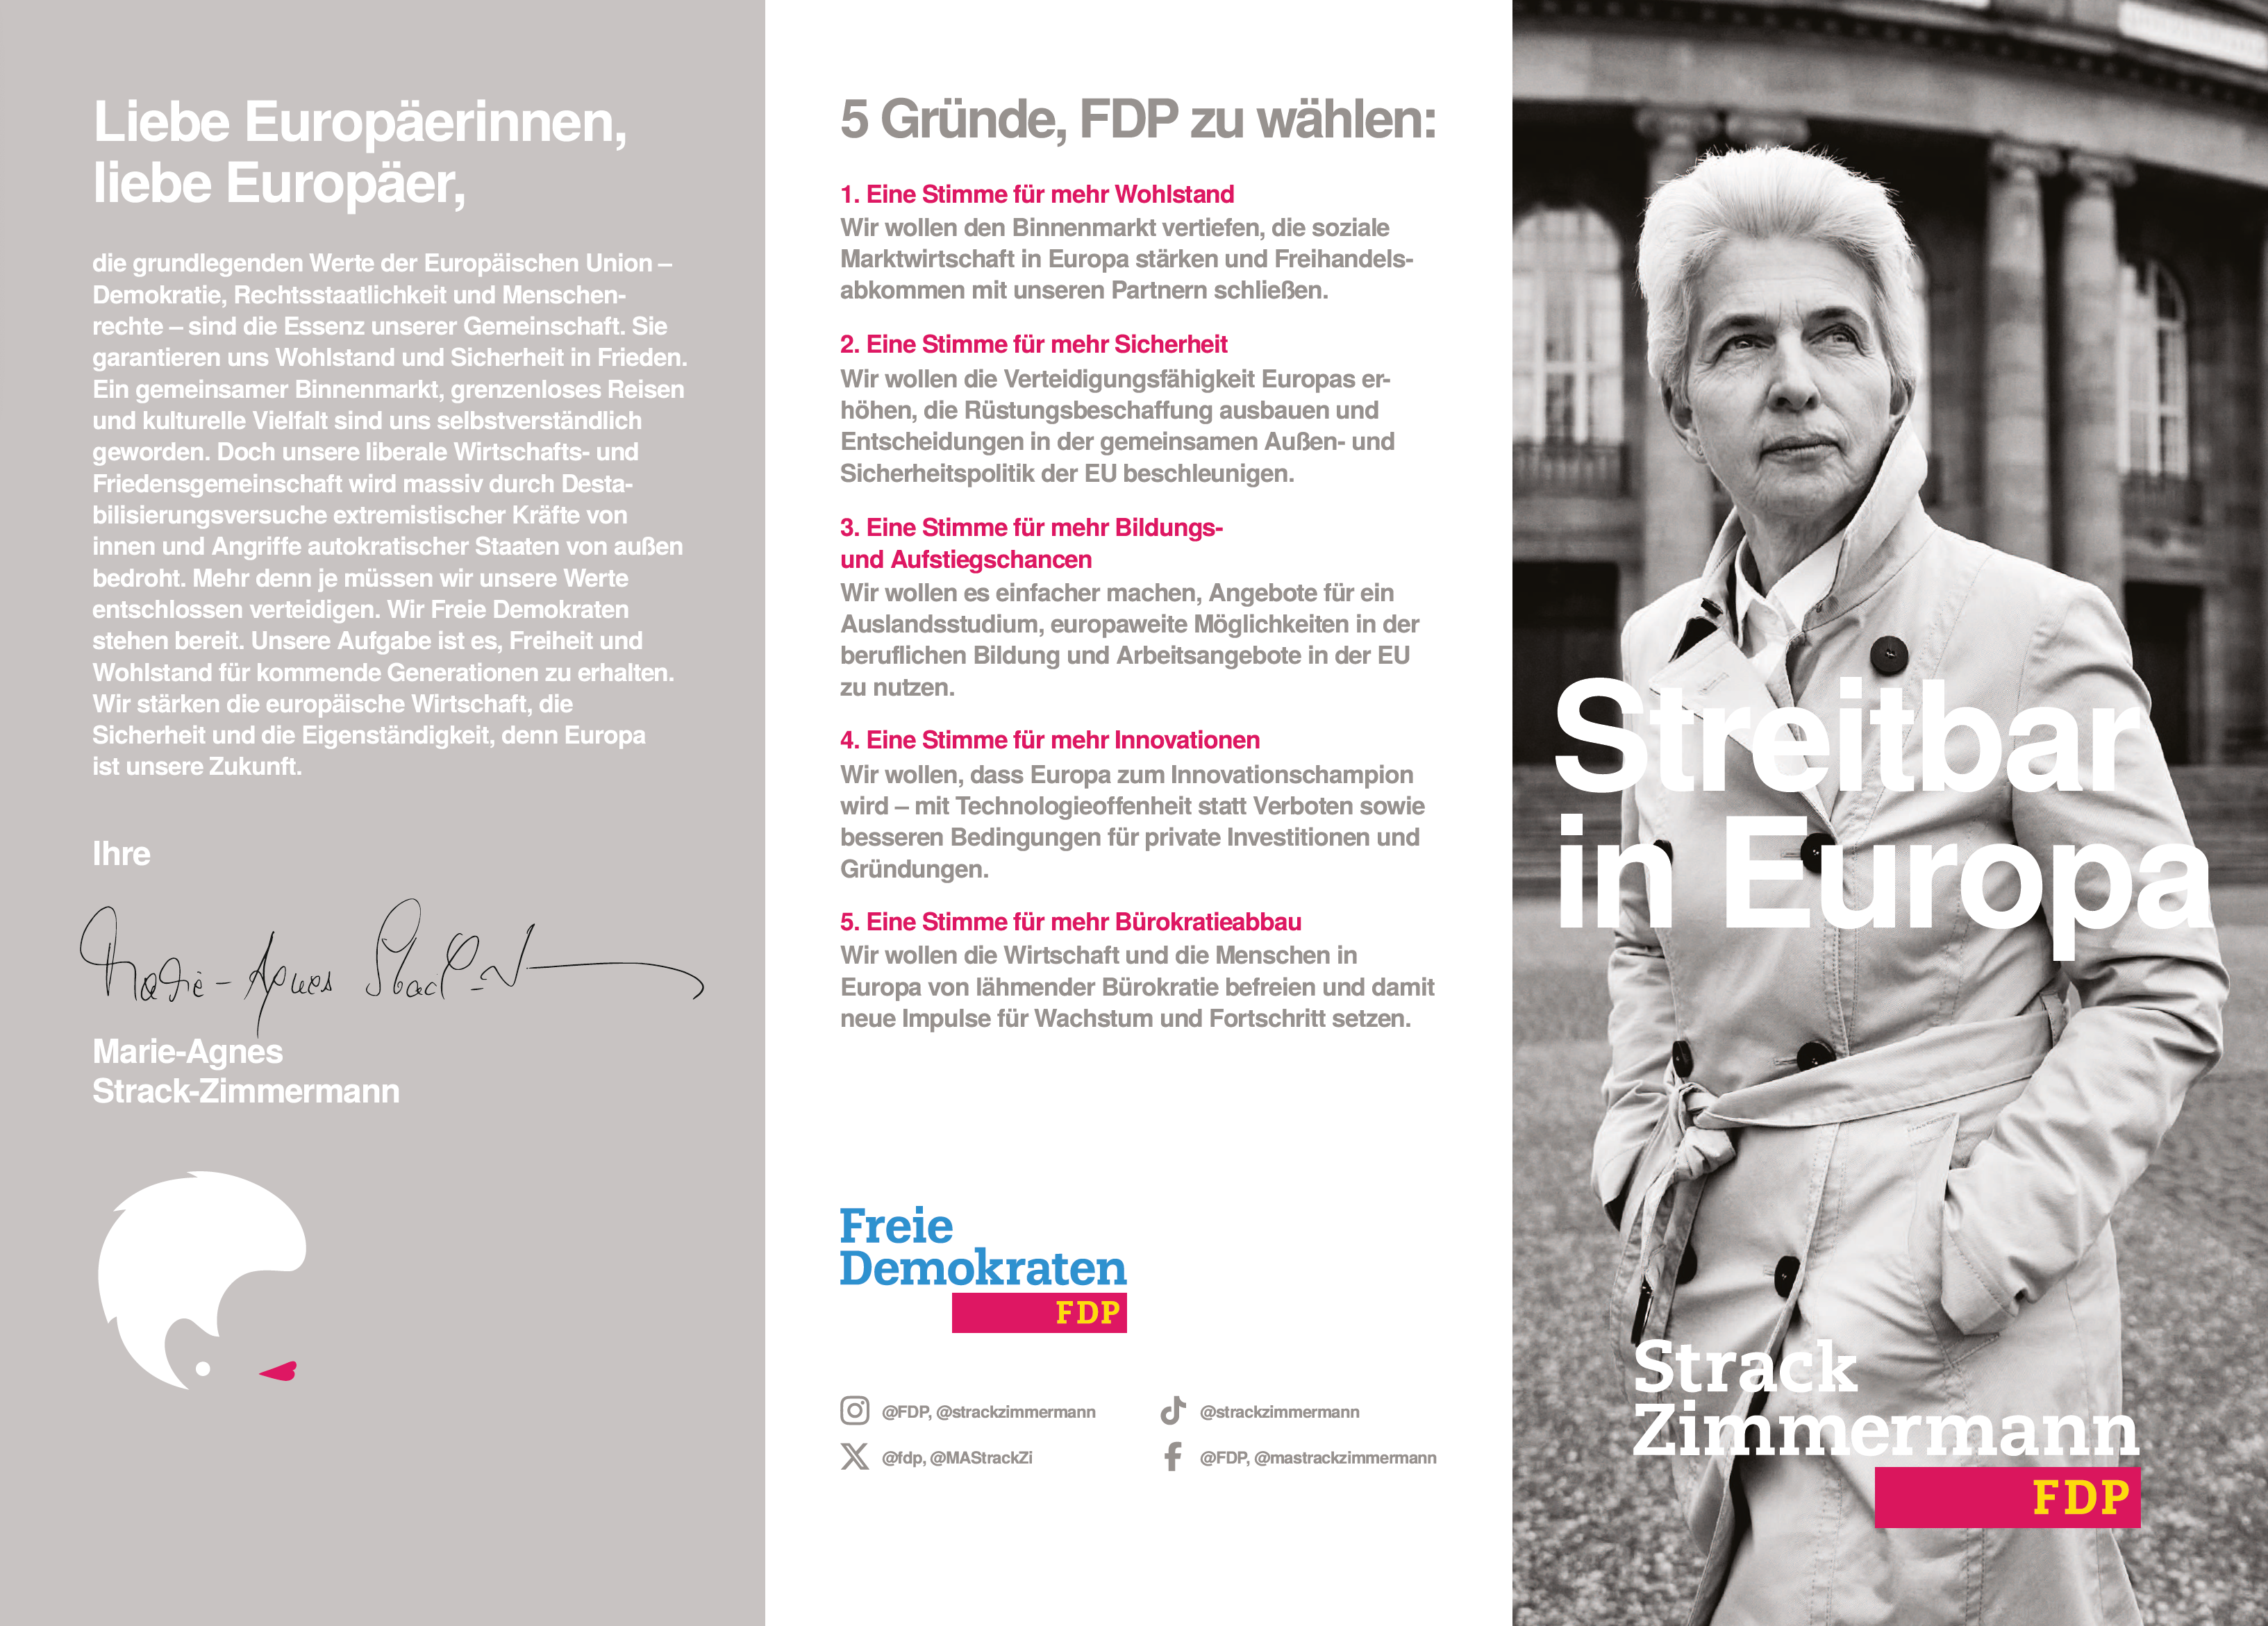 Marie-Agnes Strack-Zimmermann (MASZ) | 5 Gründe, FDP zu wählen